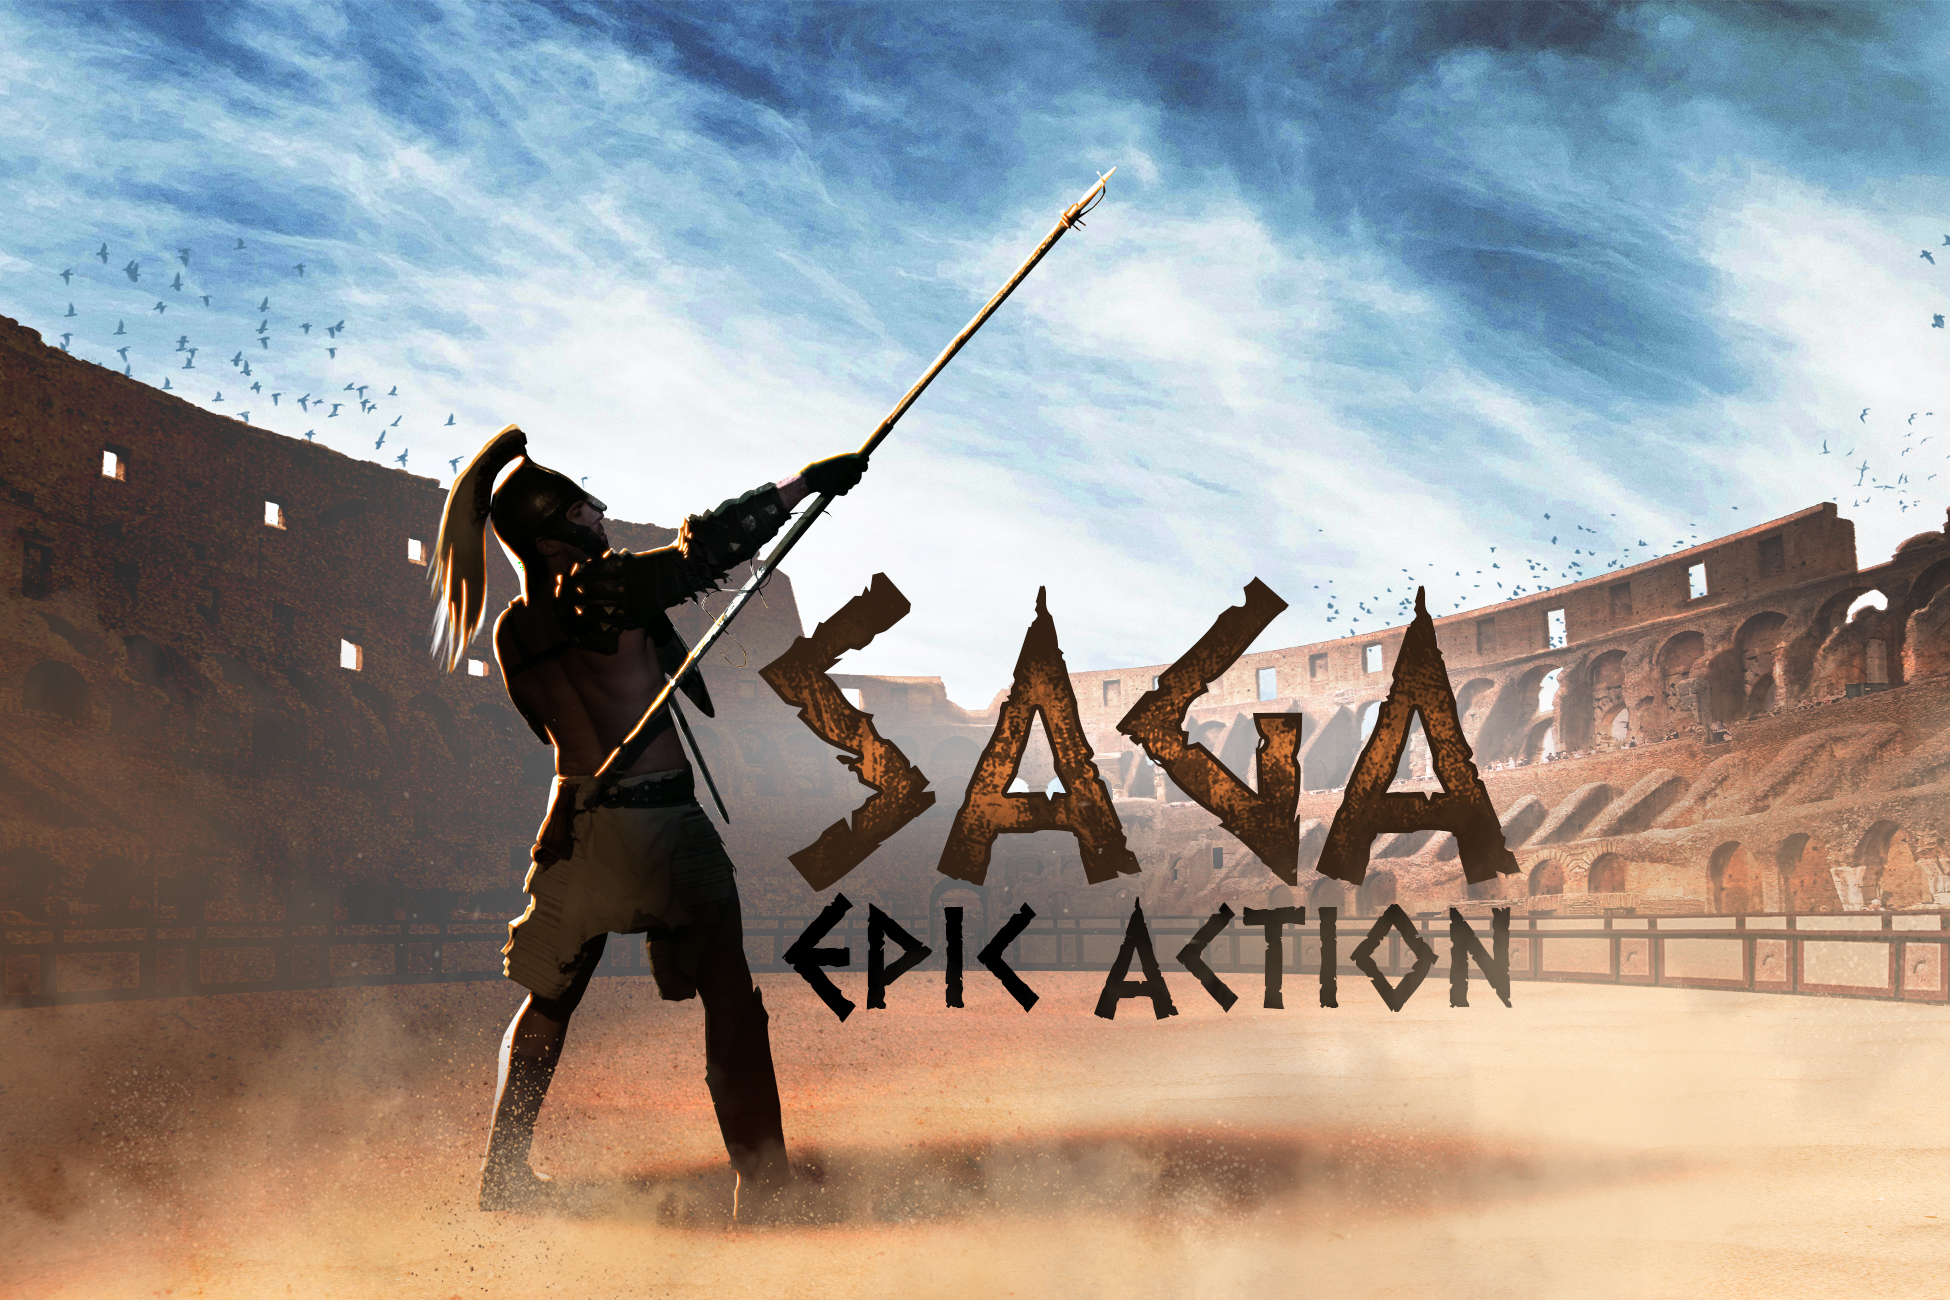 SAGA: Epic Action Music Pack